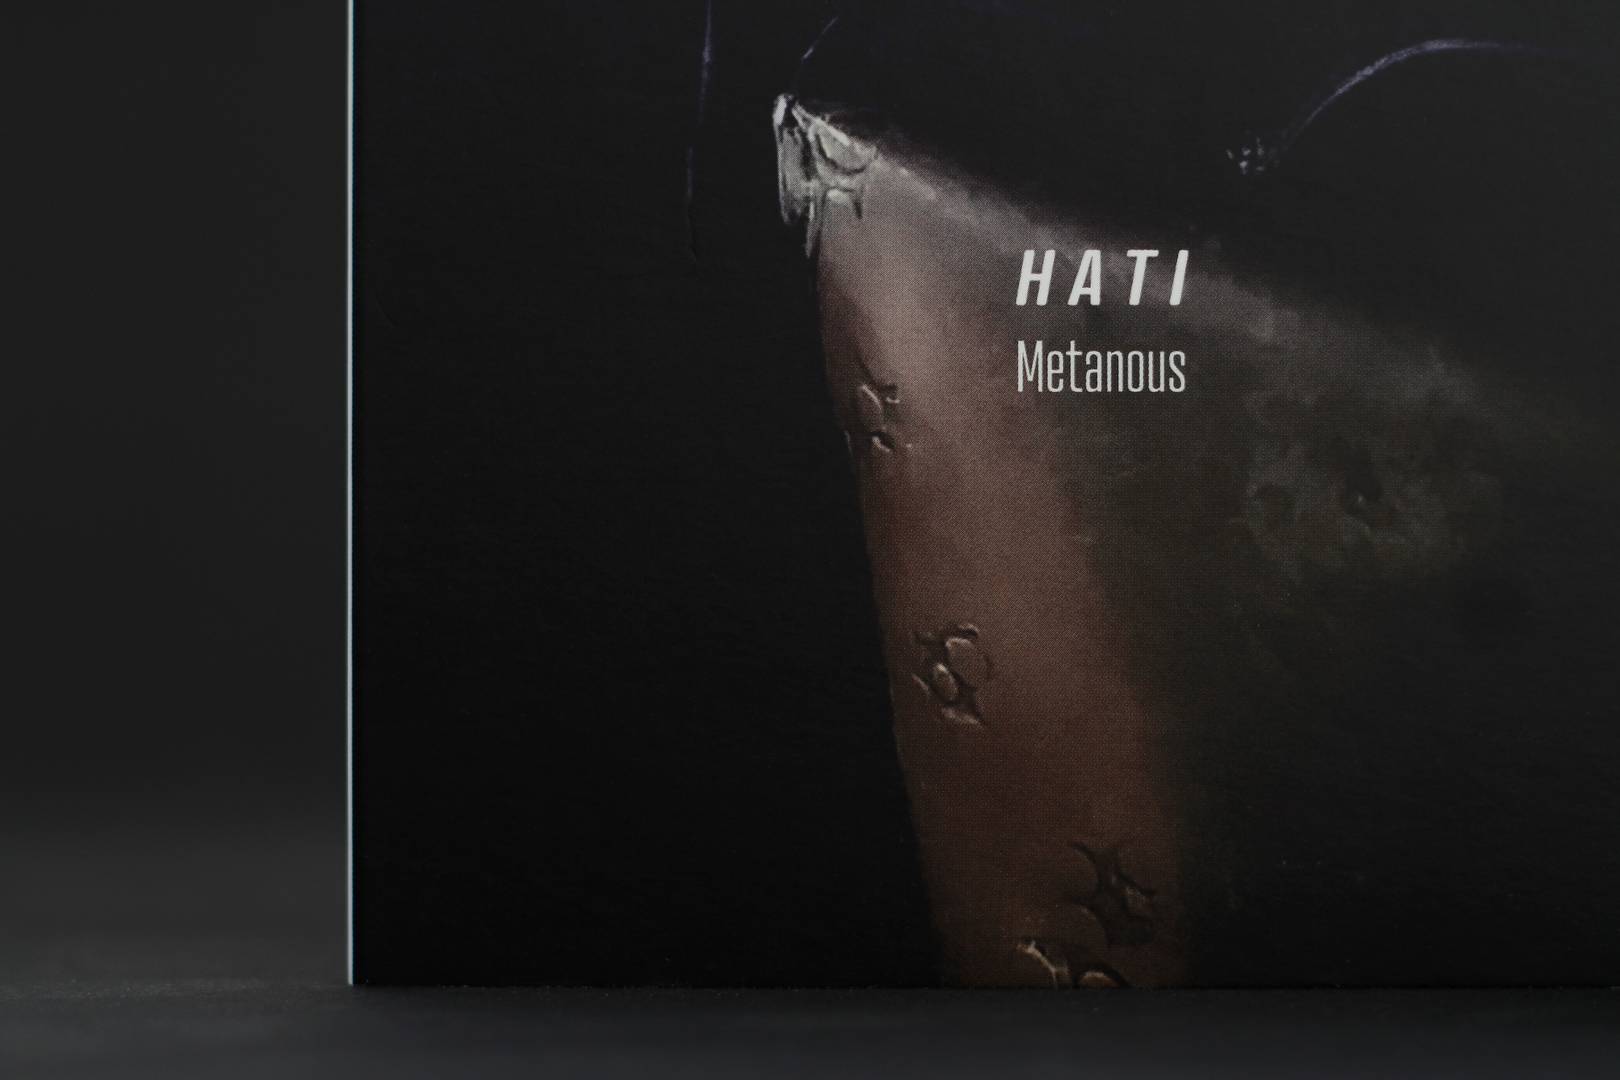 okładka płyty Metanaous HATI/008